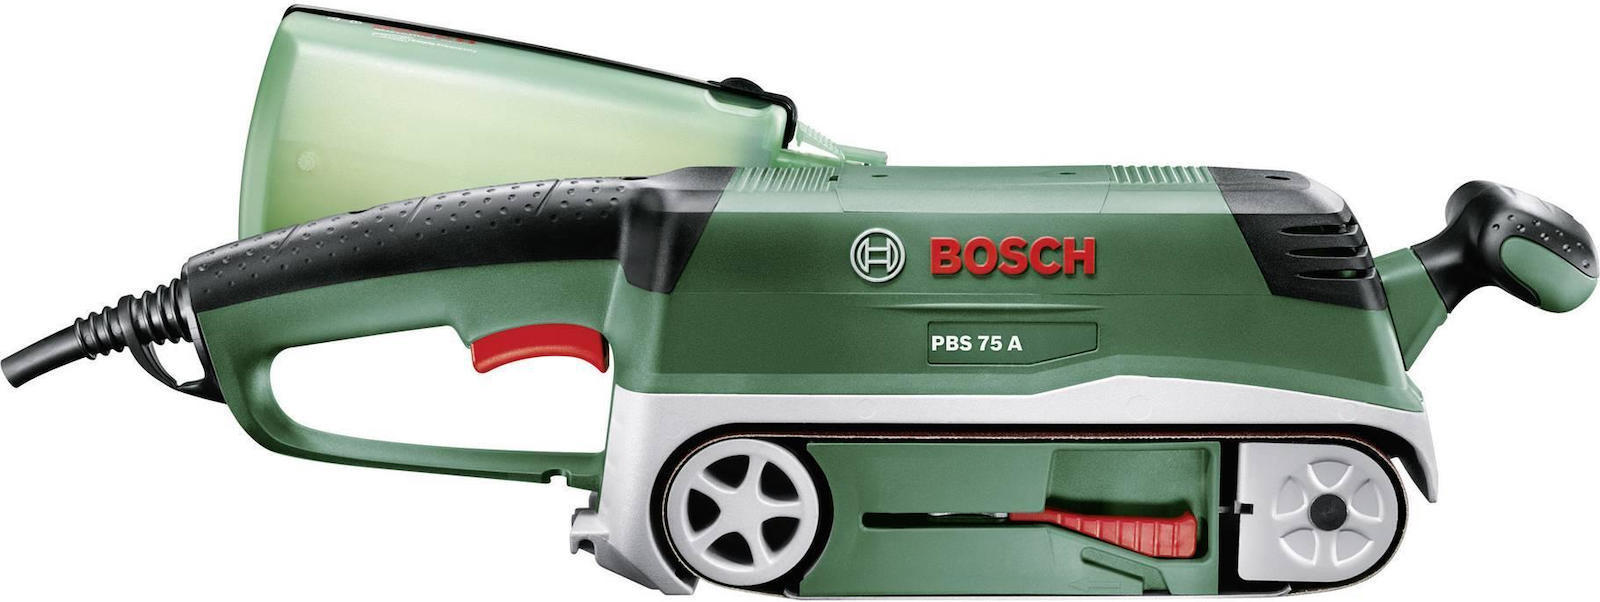 Bosch pbs 75 a крепление к столу